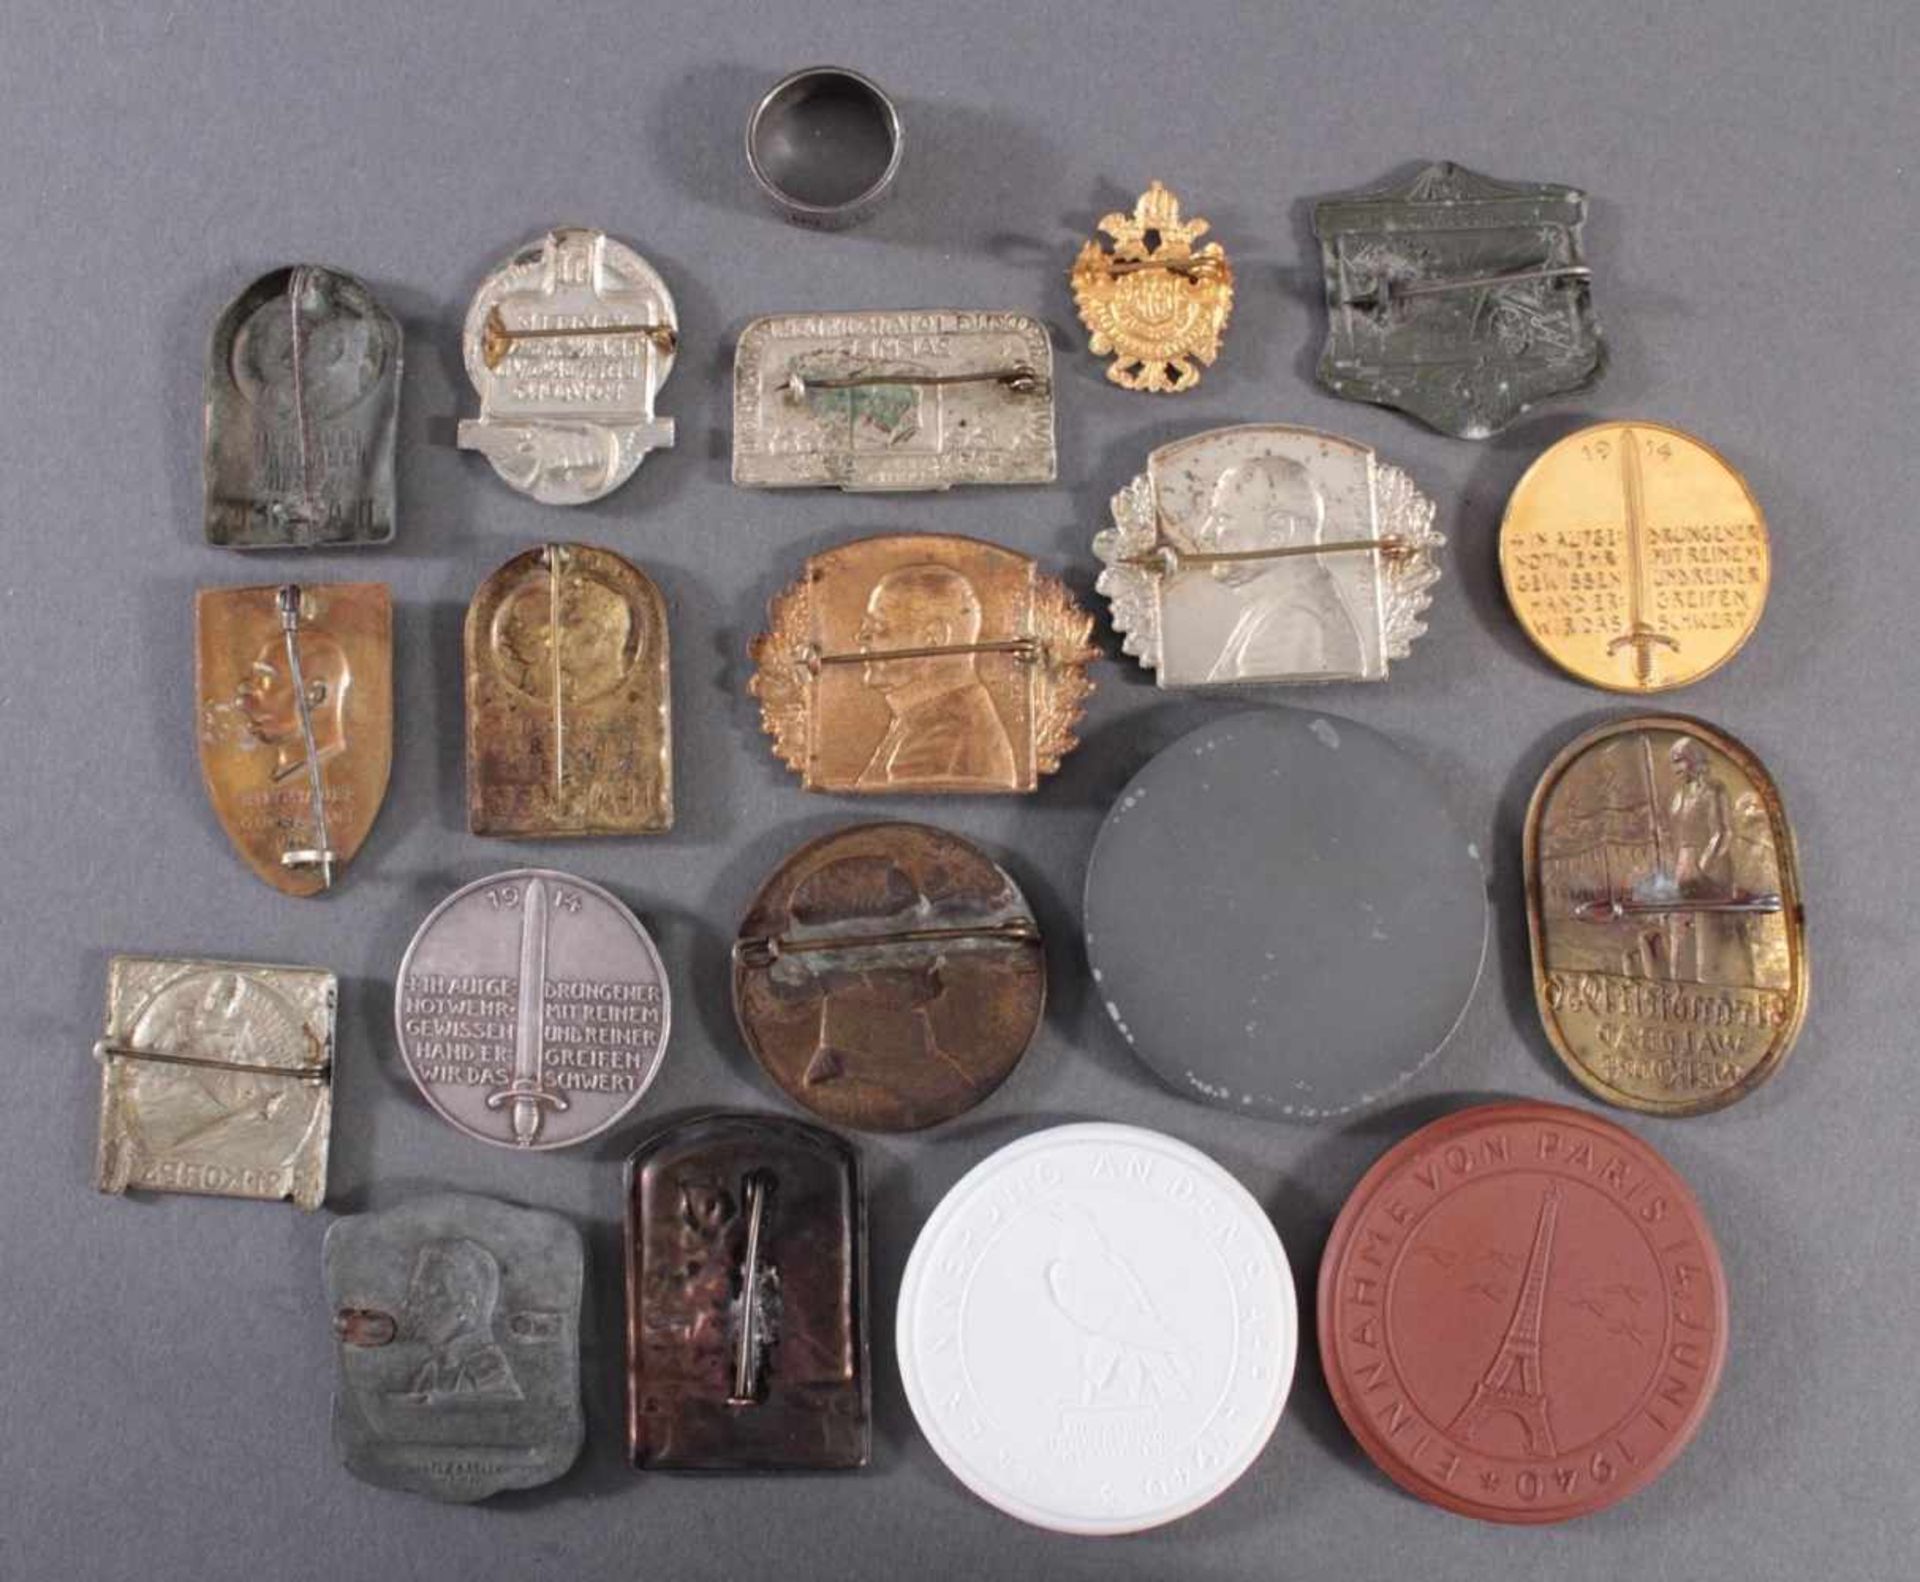 20 Tagungs- und Veranstaltungsabzeichen, Medaillen, MemorabiliaBöttger Steinzeug Medaillen, ein Ring - Image 2 of 2